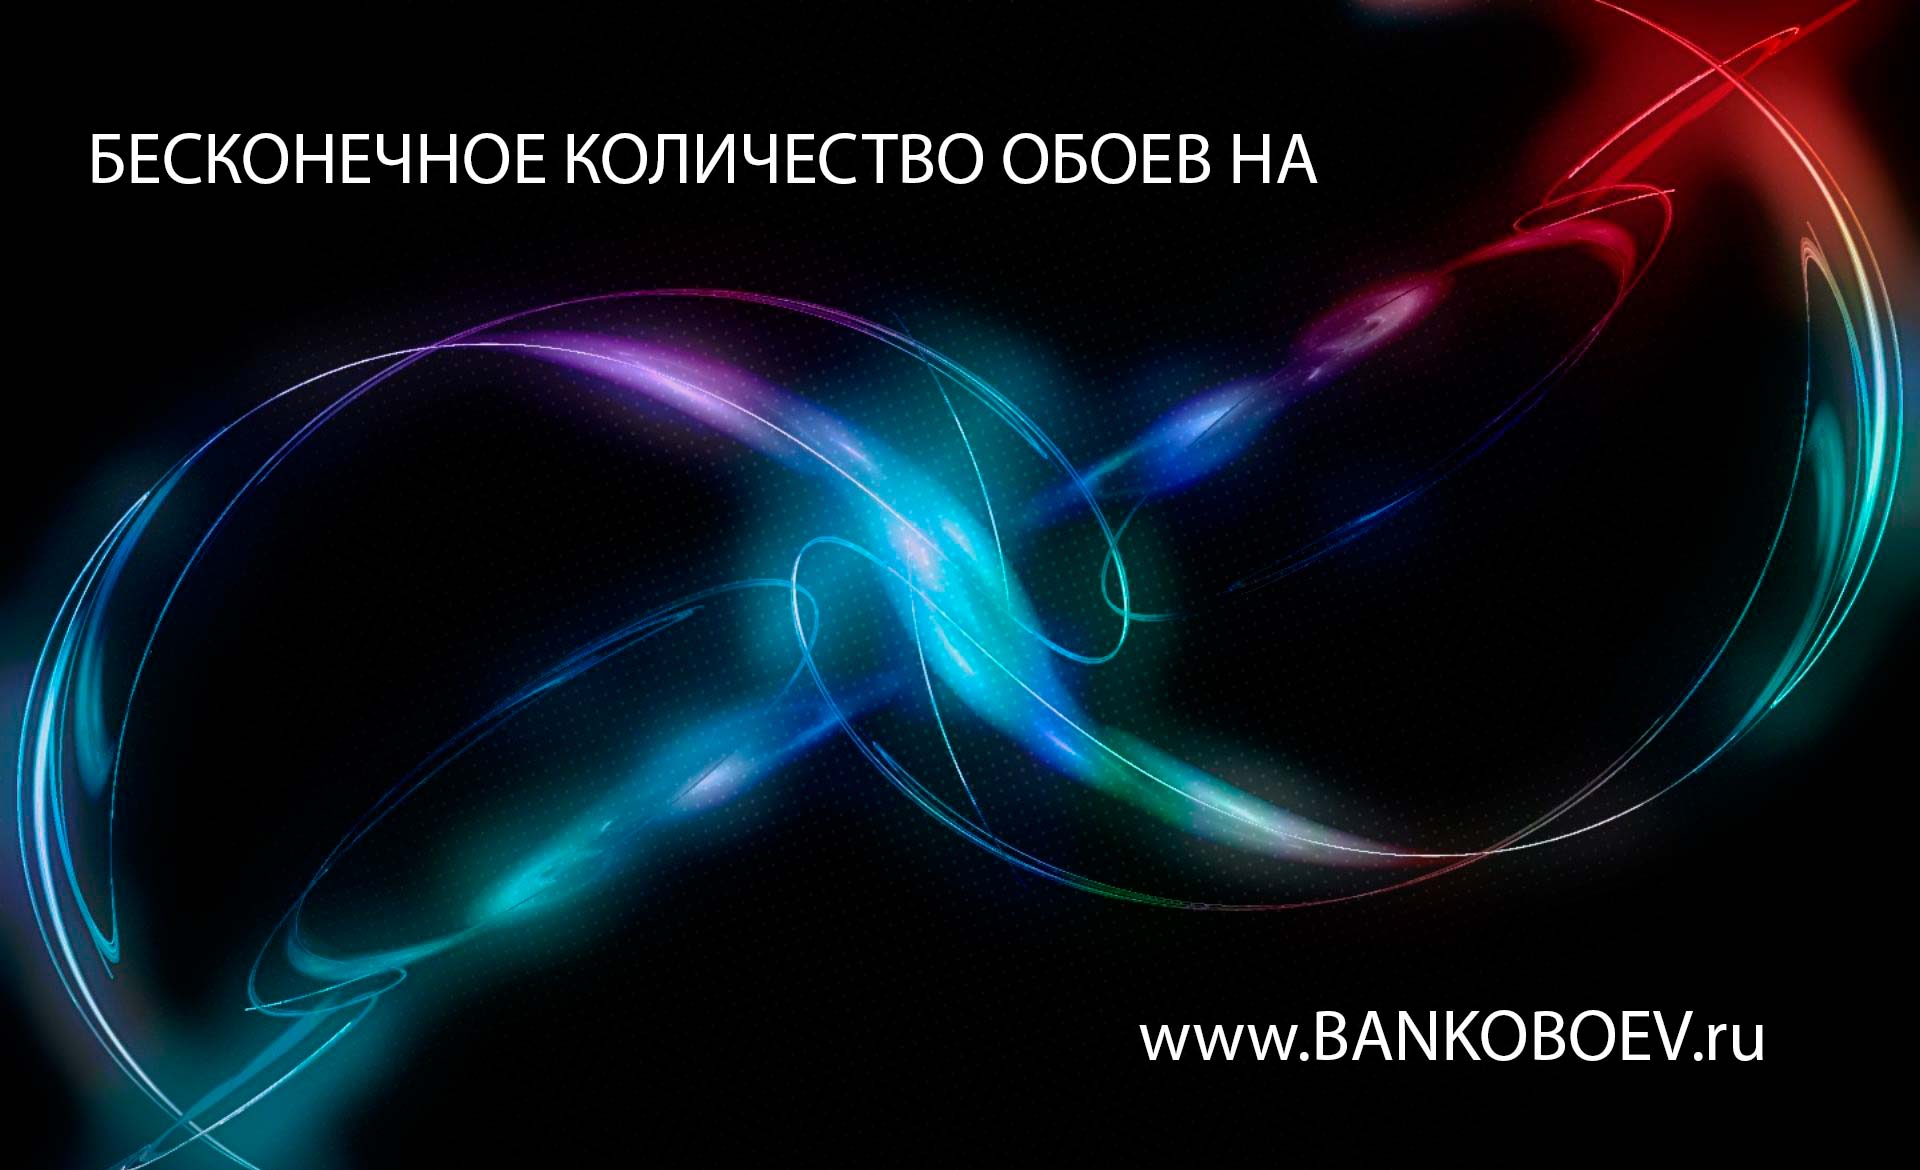 Bankoboev Ru Image Mjy4nja2 Jpg